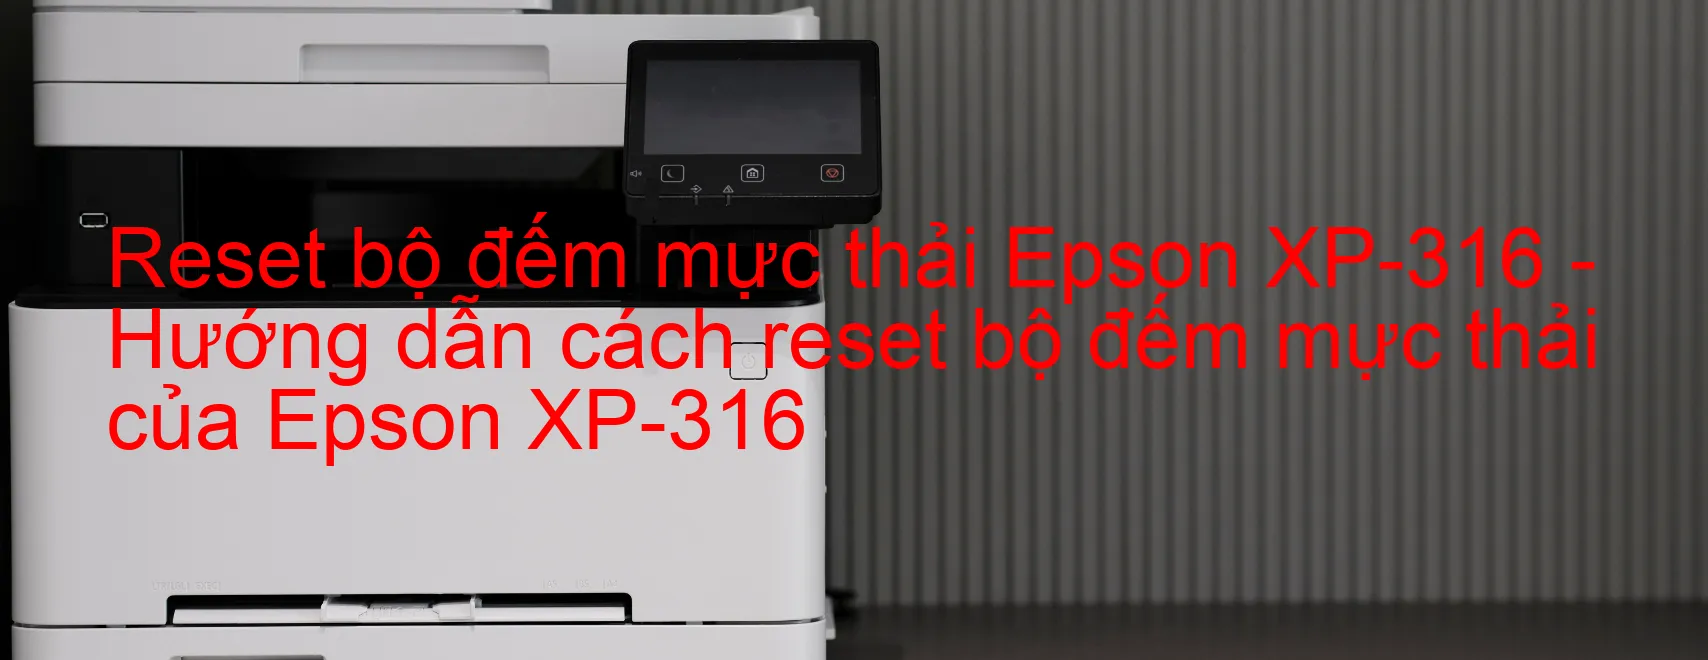 Reset bộ đếm mực thải Epson XP-316 - Hướng dẫn cách reset bộ đếm mực thải của Epson XP-316